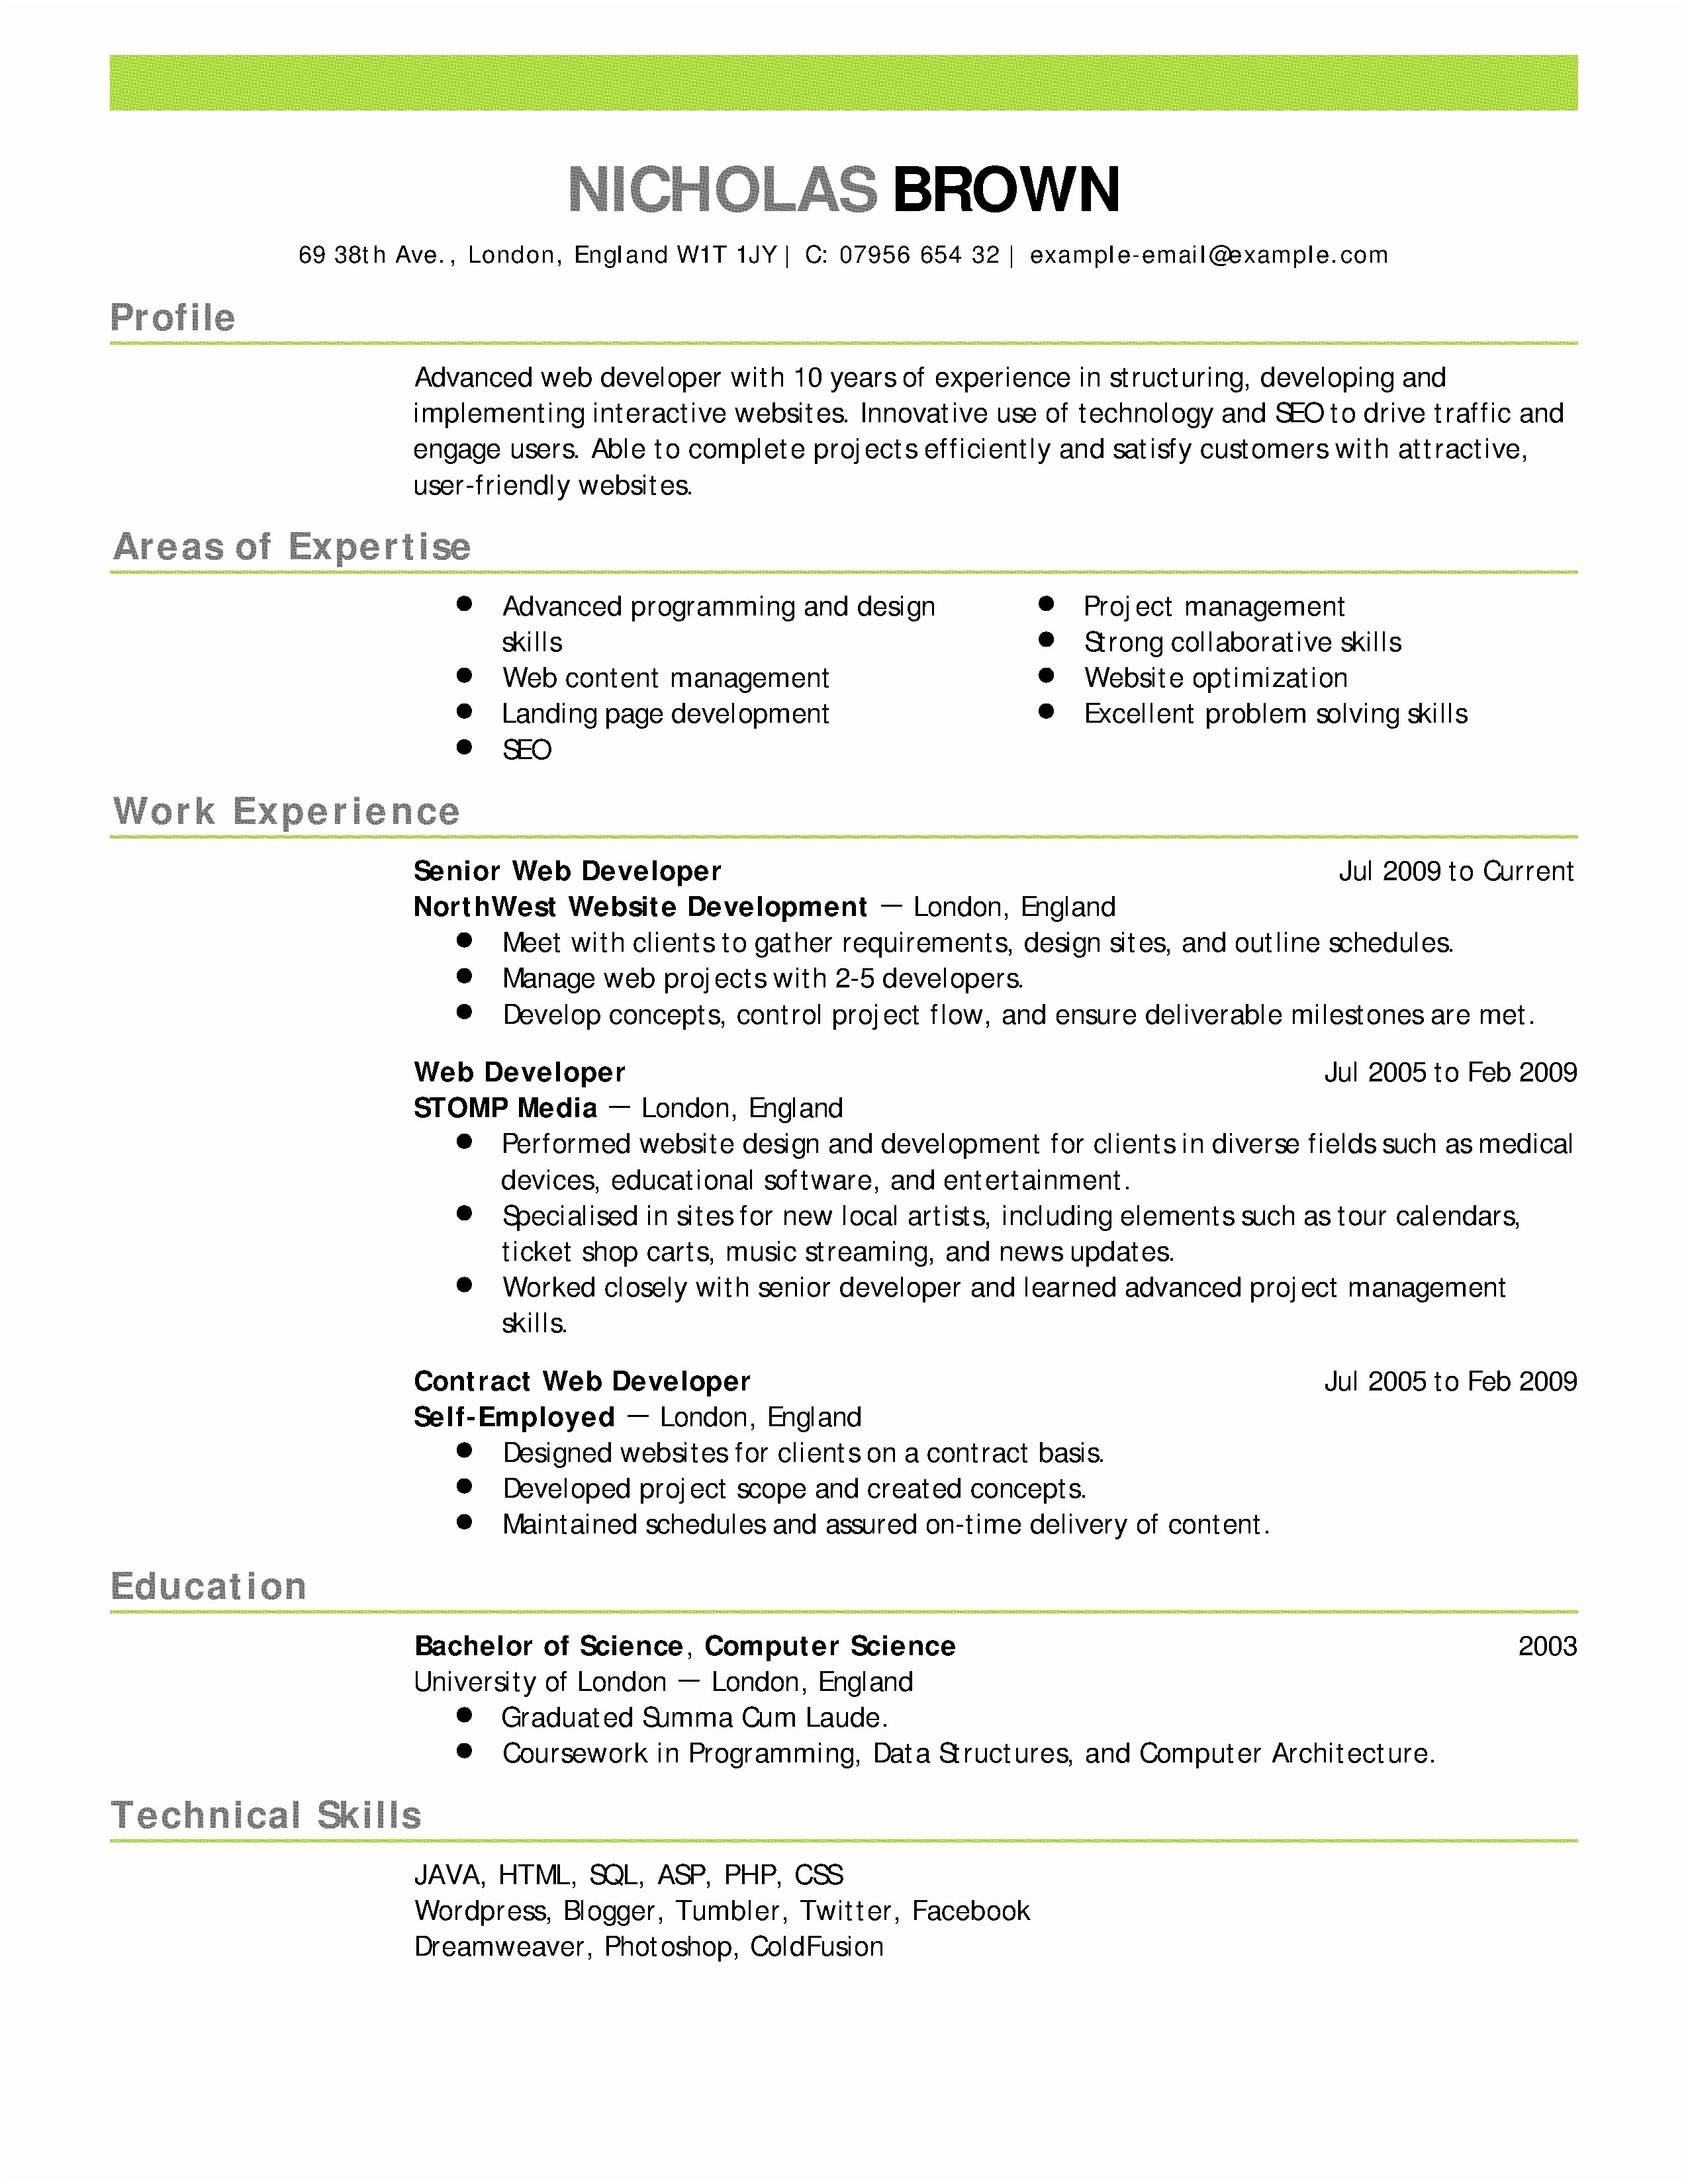 Resume Letter Template - Sample Cover Letter for Rn Job Application New Nursing Resume